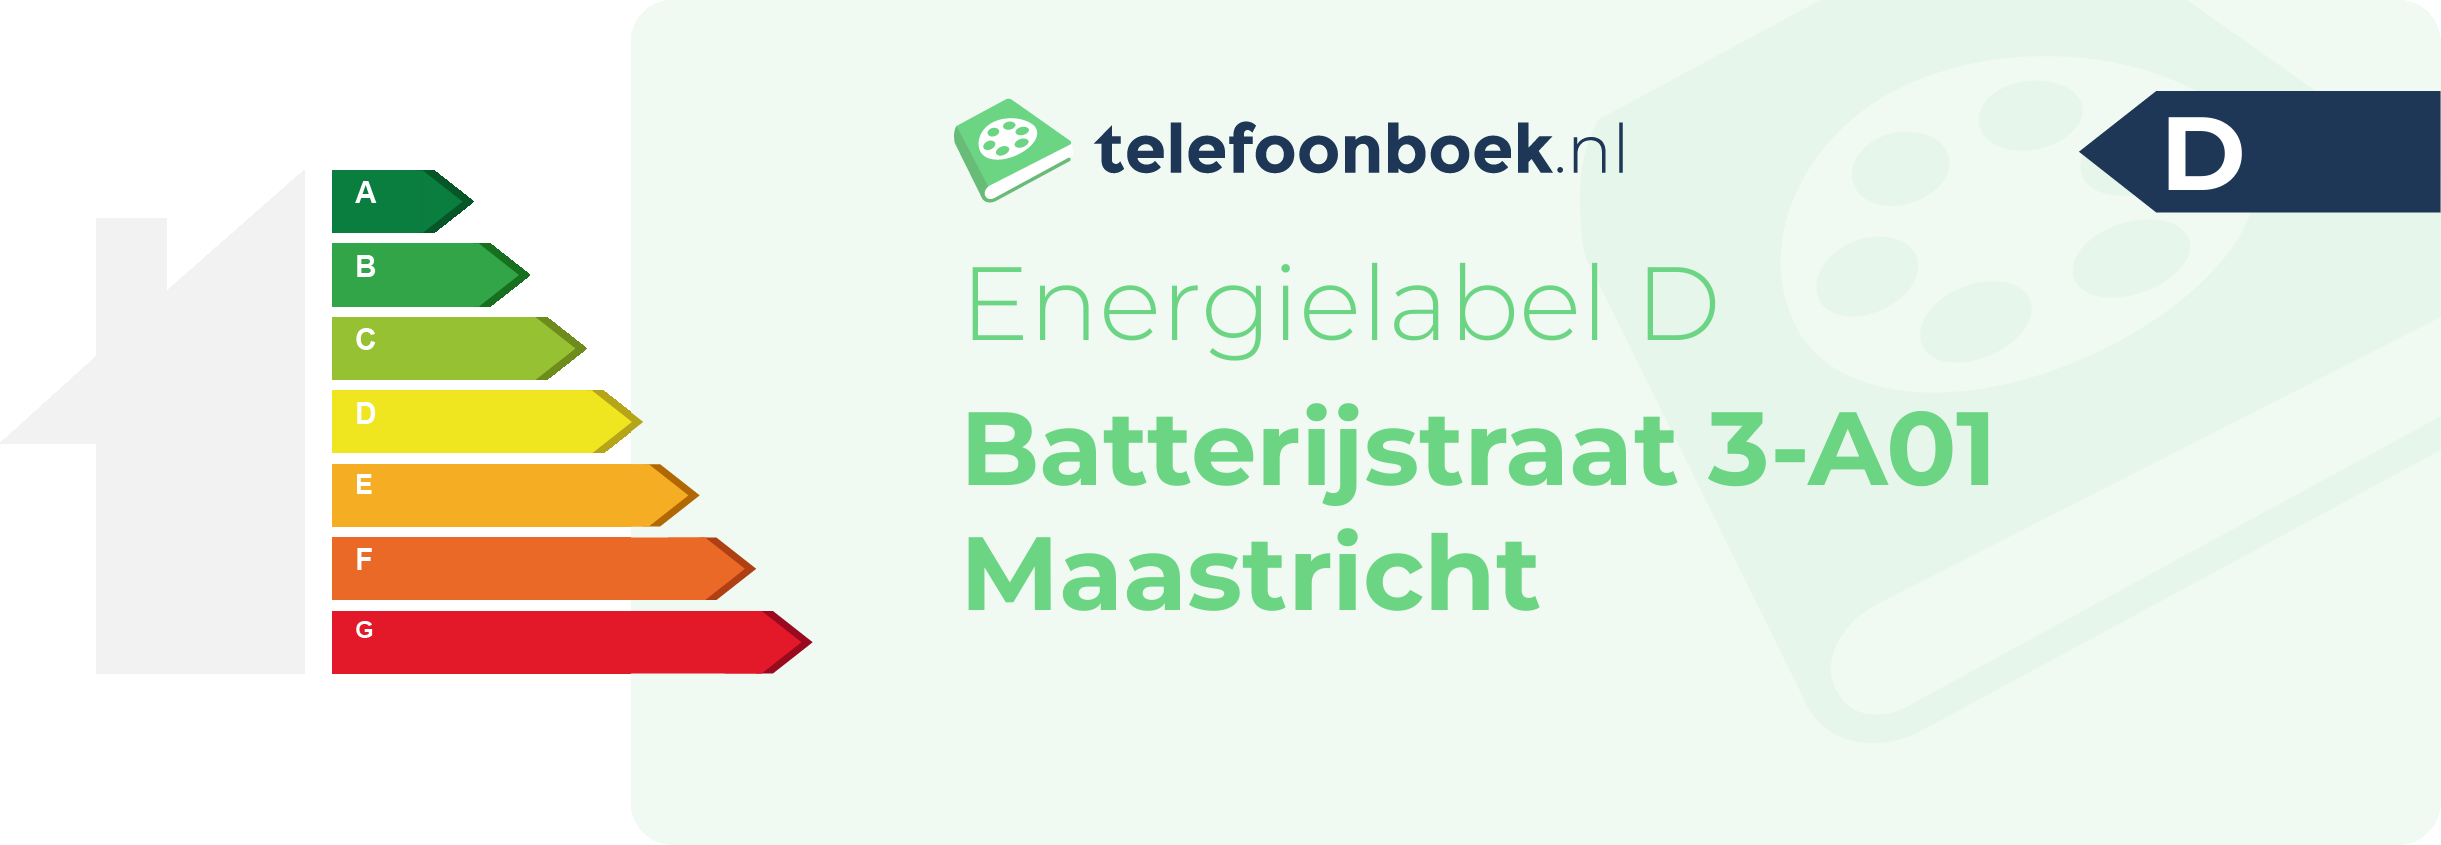 Energielabel Batterijstraat 3-A01 Maastricht